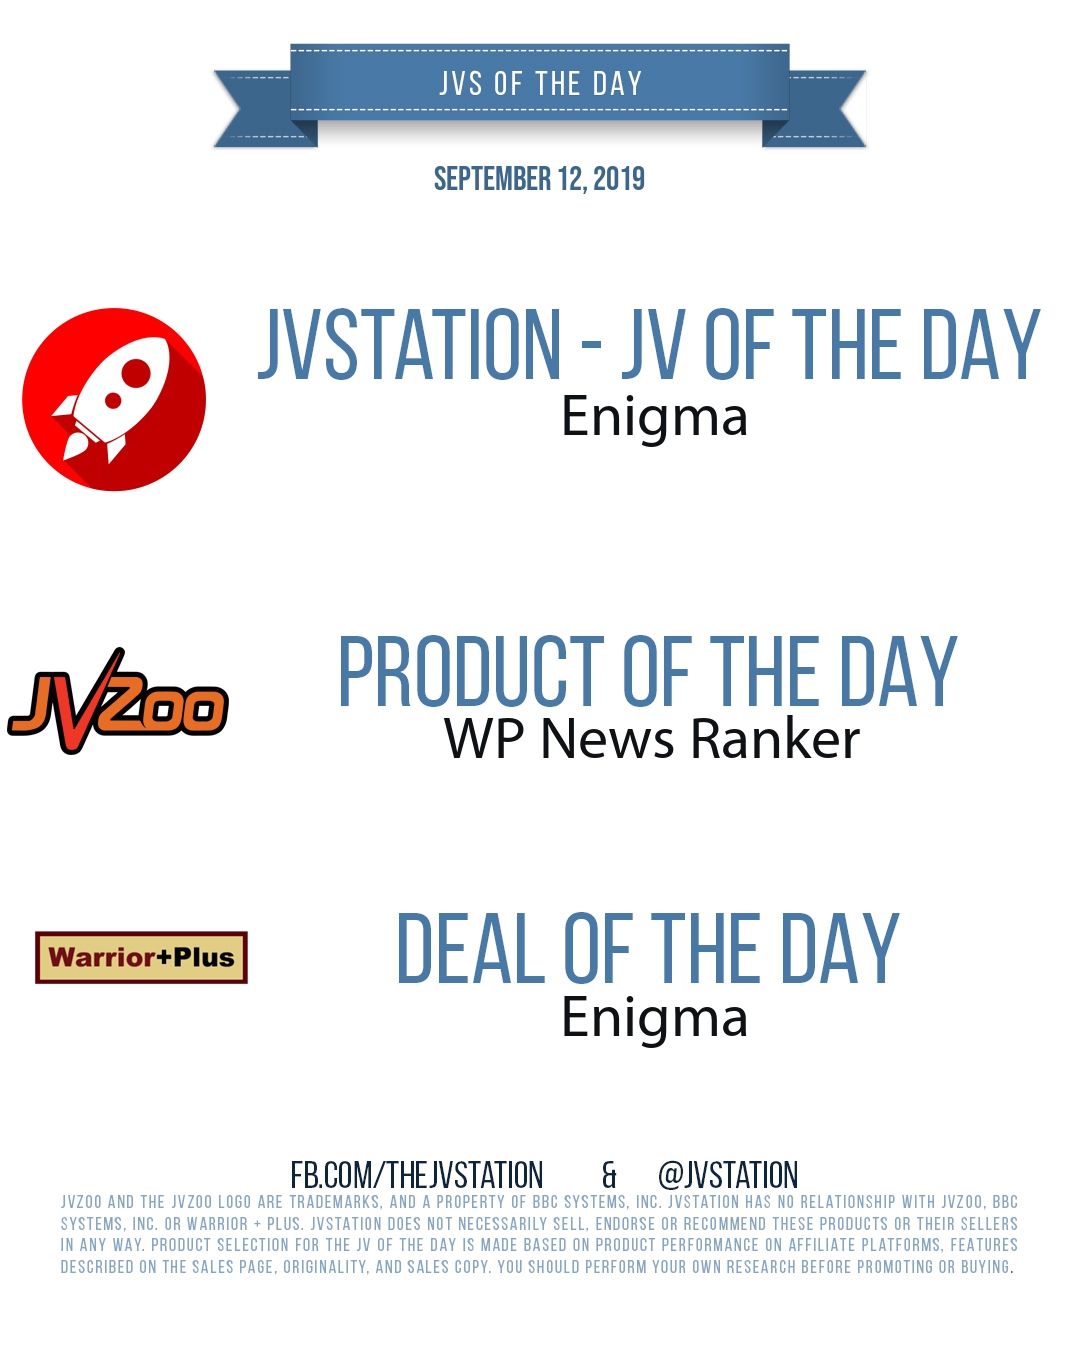 JVs of the day - September 12, 2019